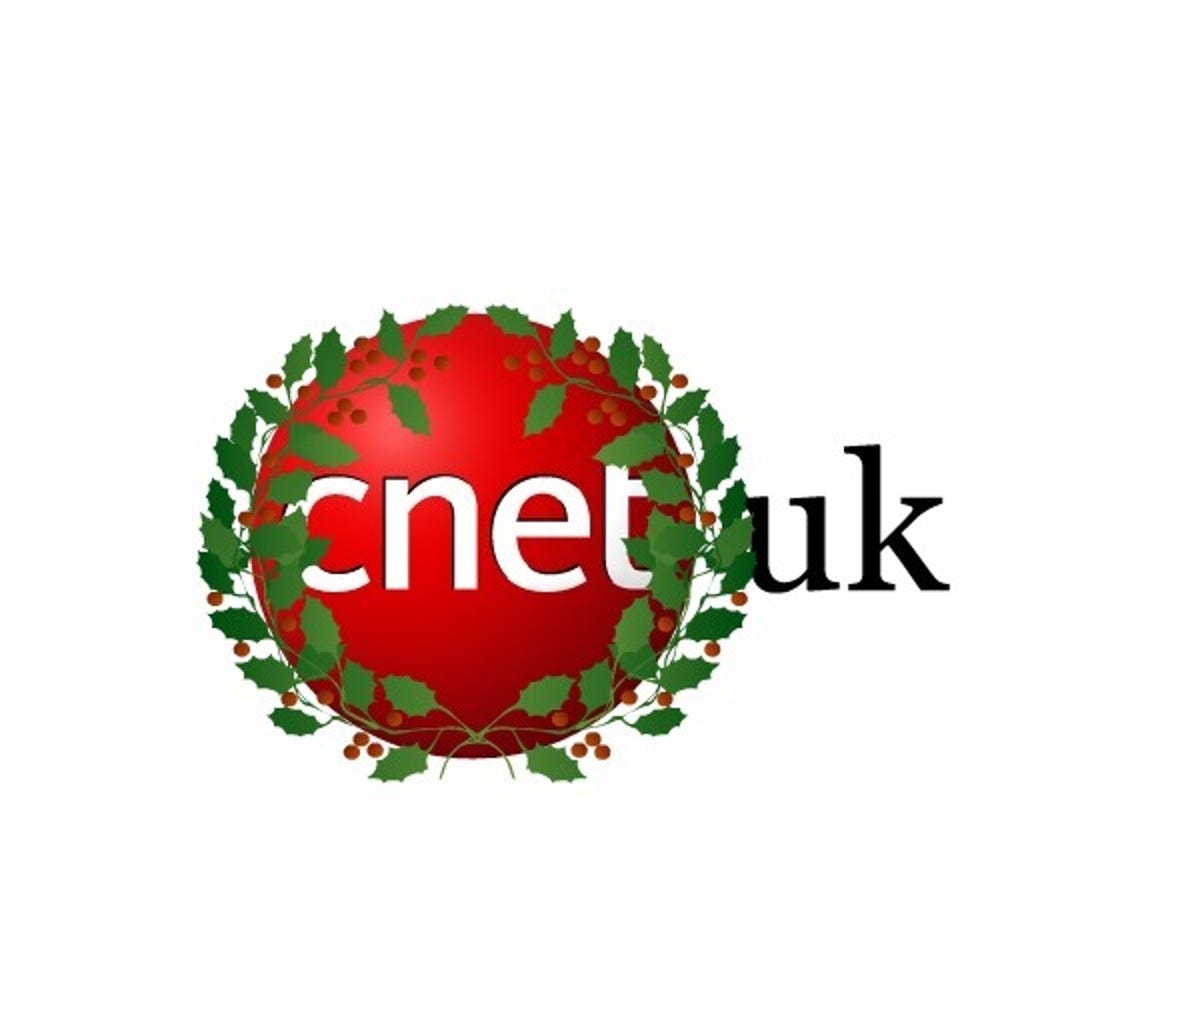 cnetuk-logo-holly.jpg